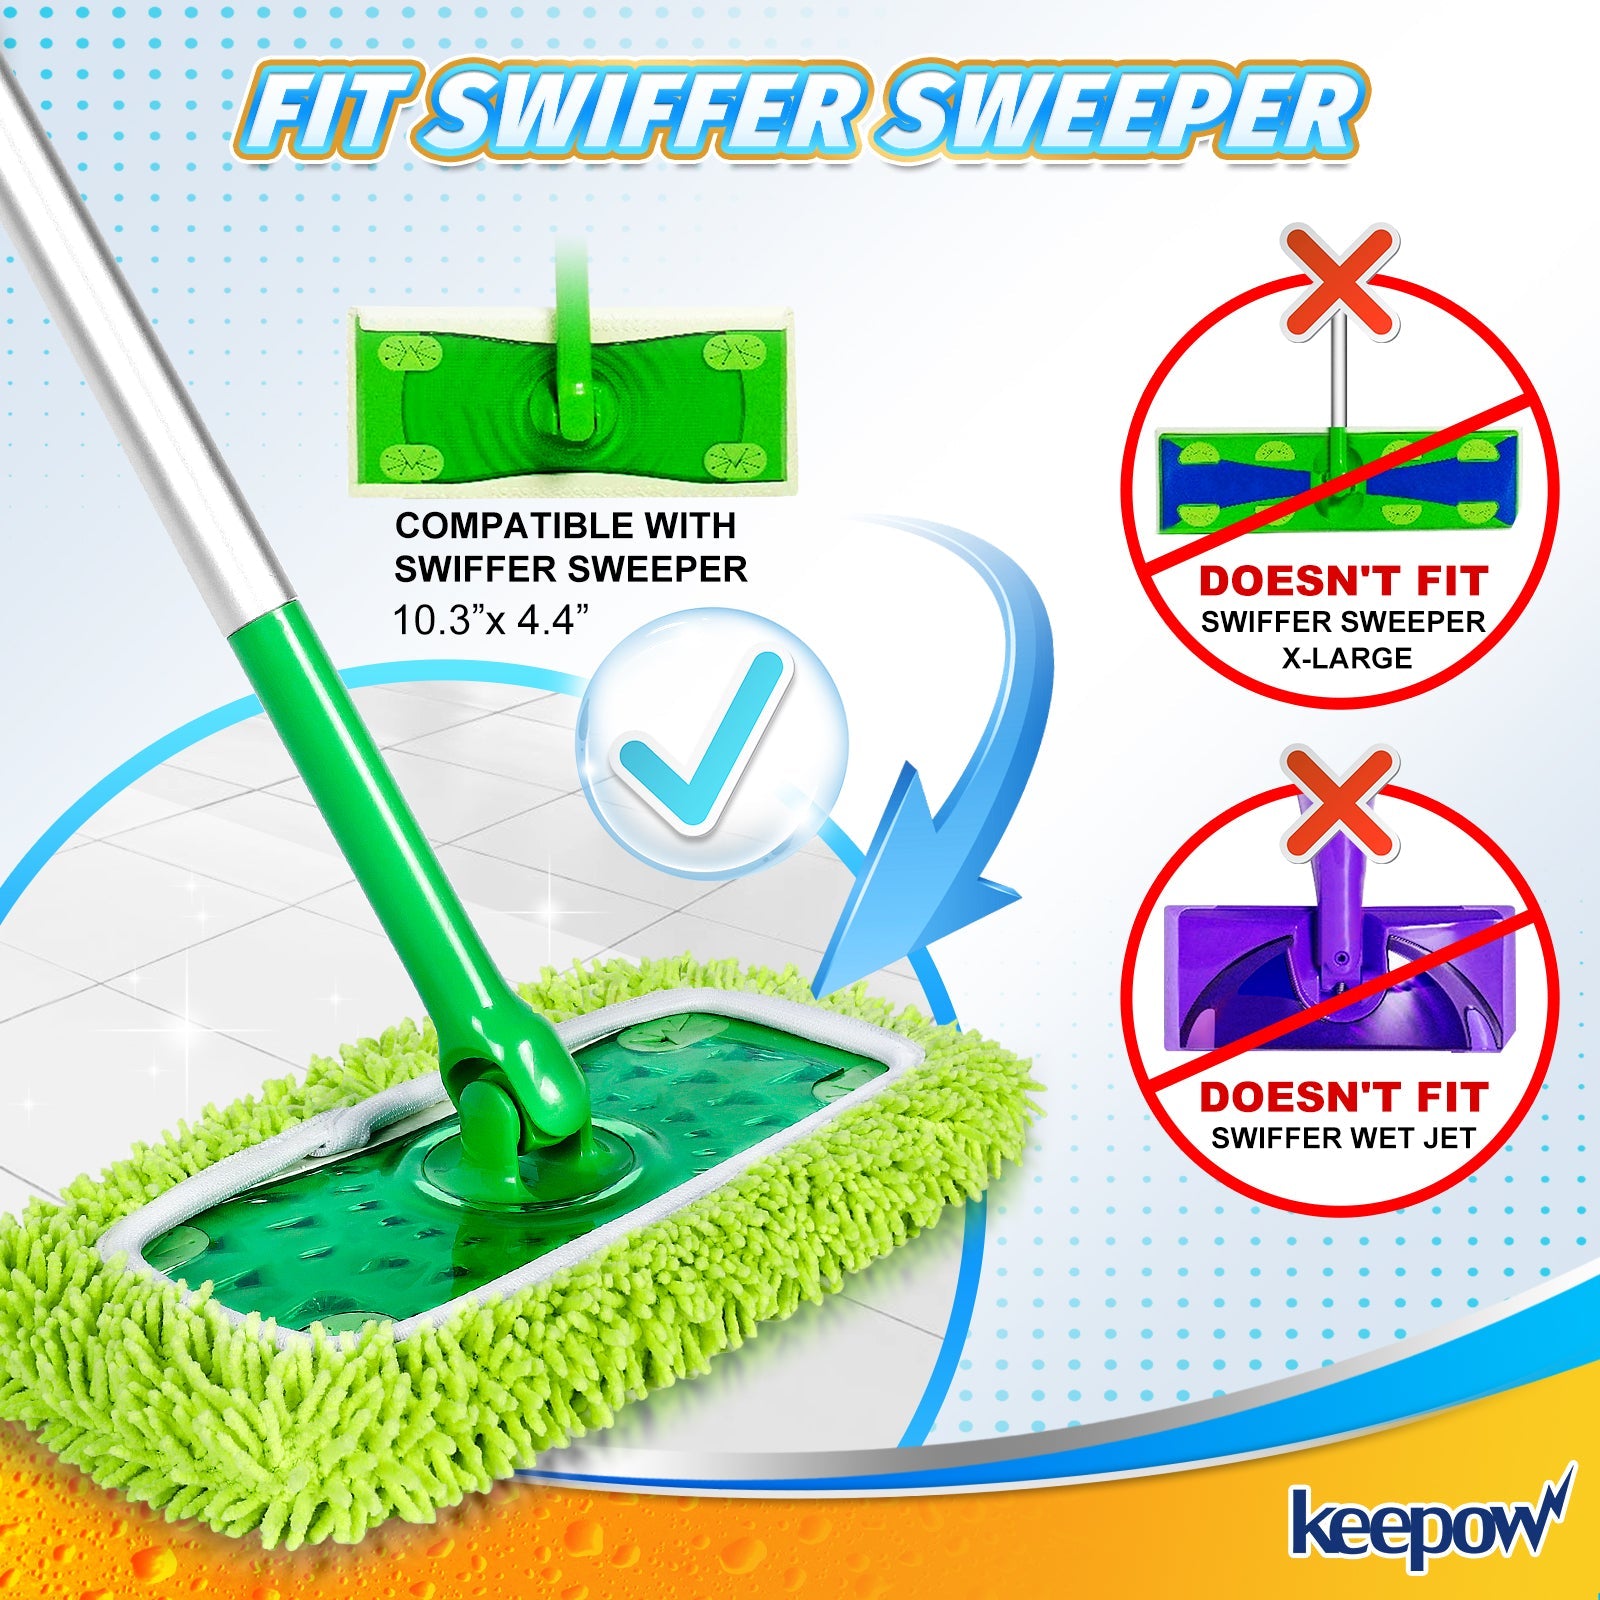 KEEPOW 5701M Toallitas secas reutilizables compatibles con Swiffer Sweeper, 6 unidades (la fregona no está incluida)